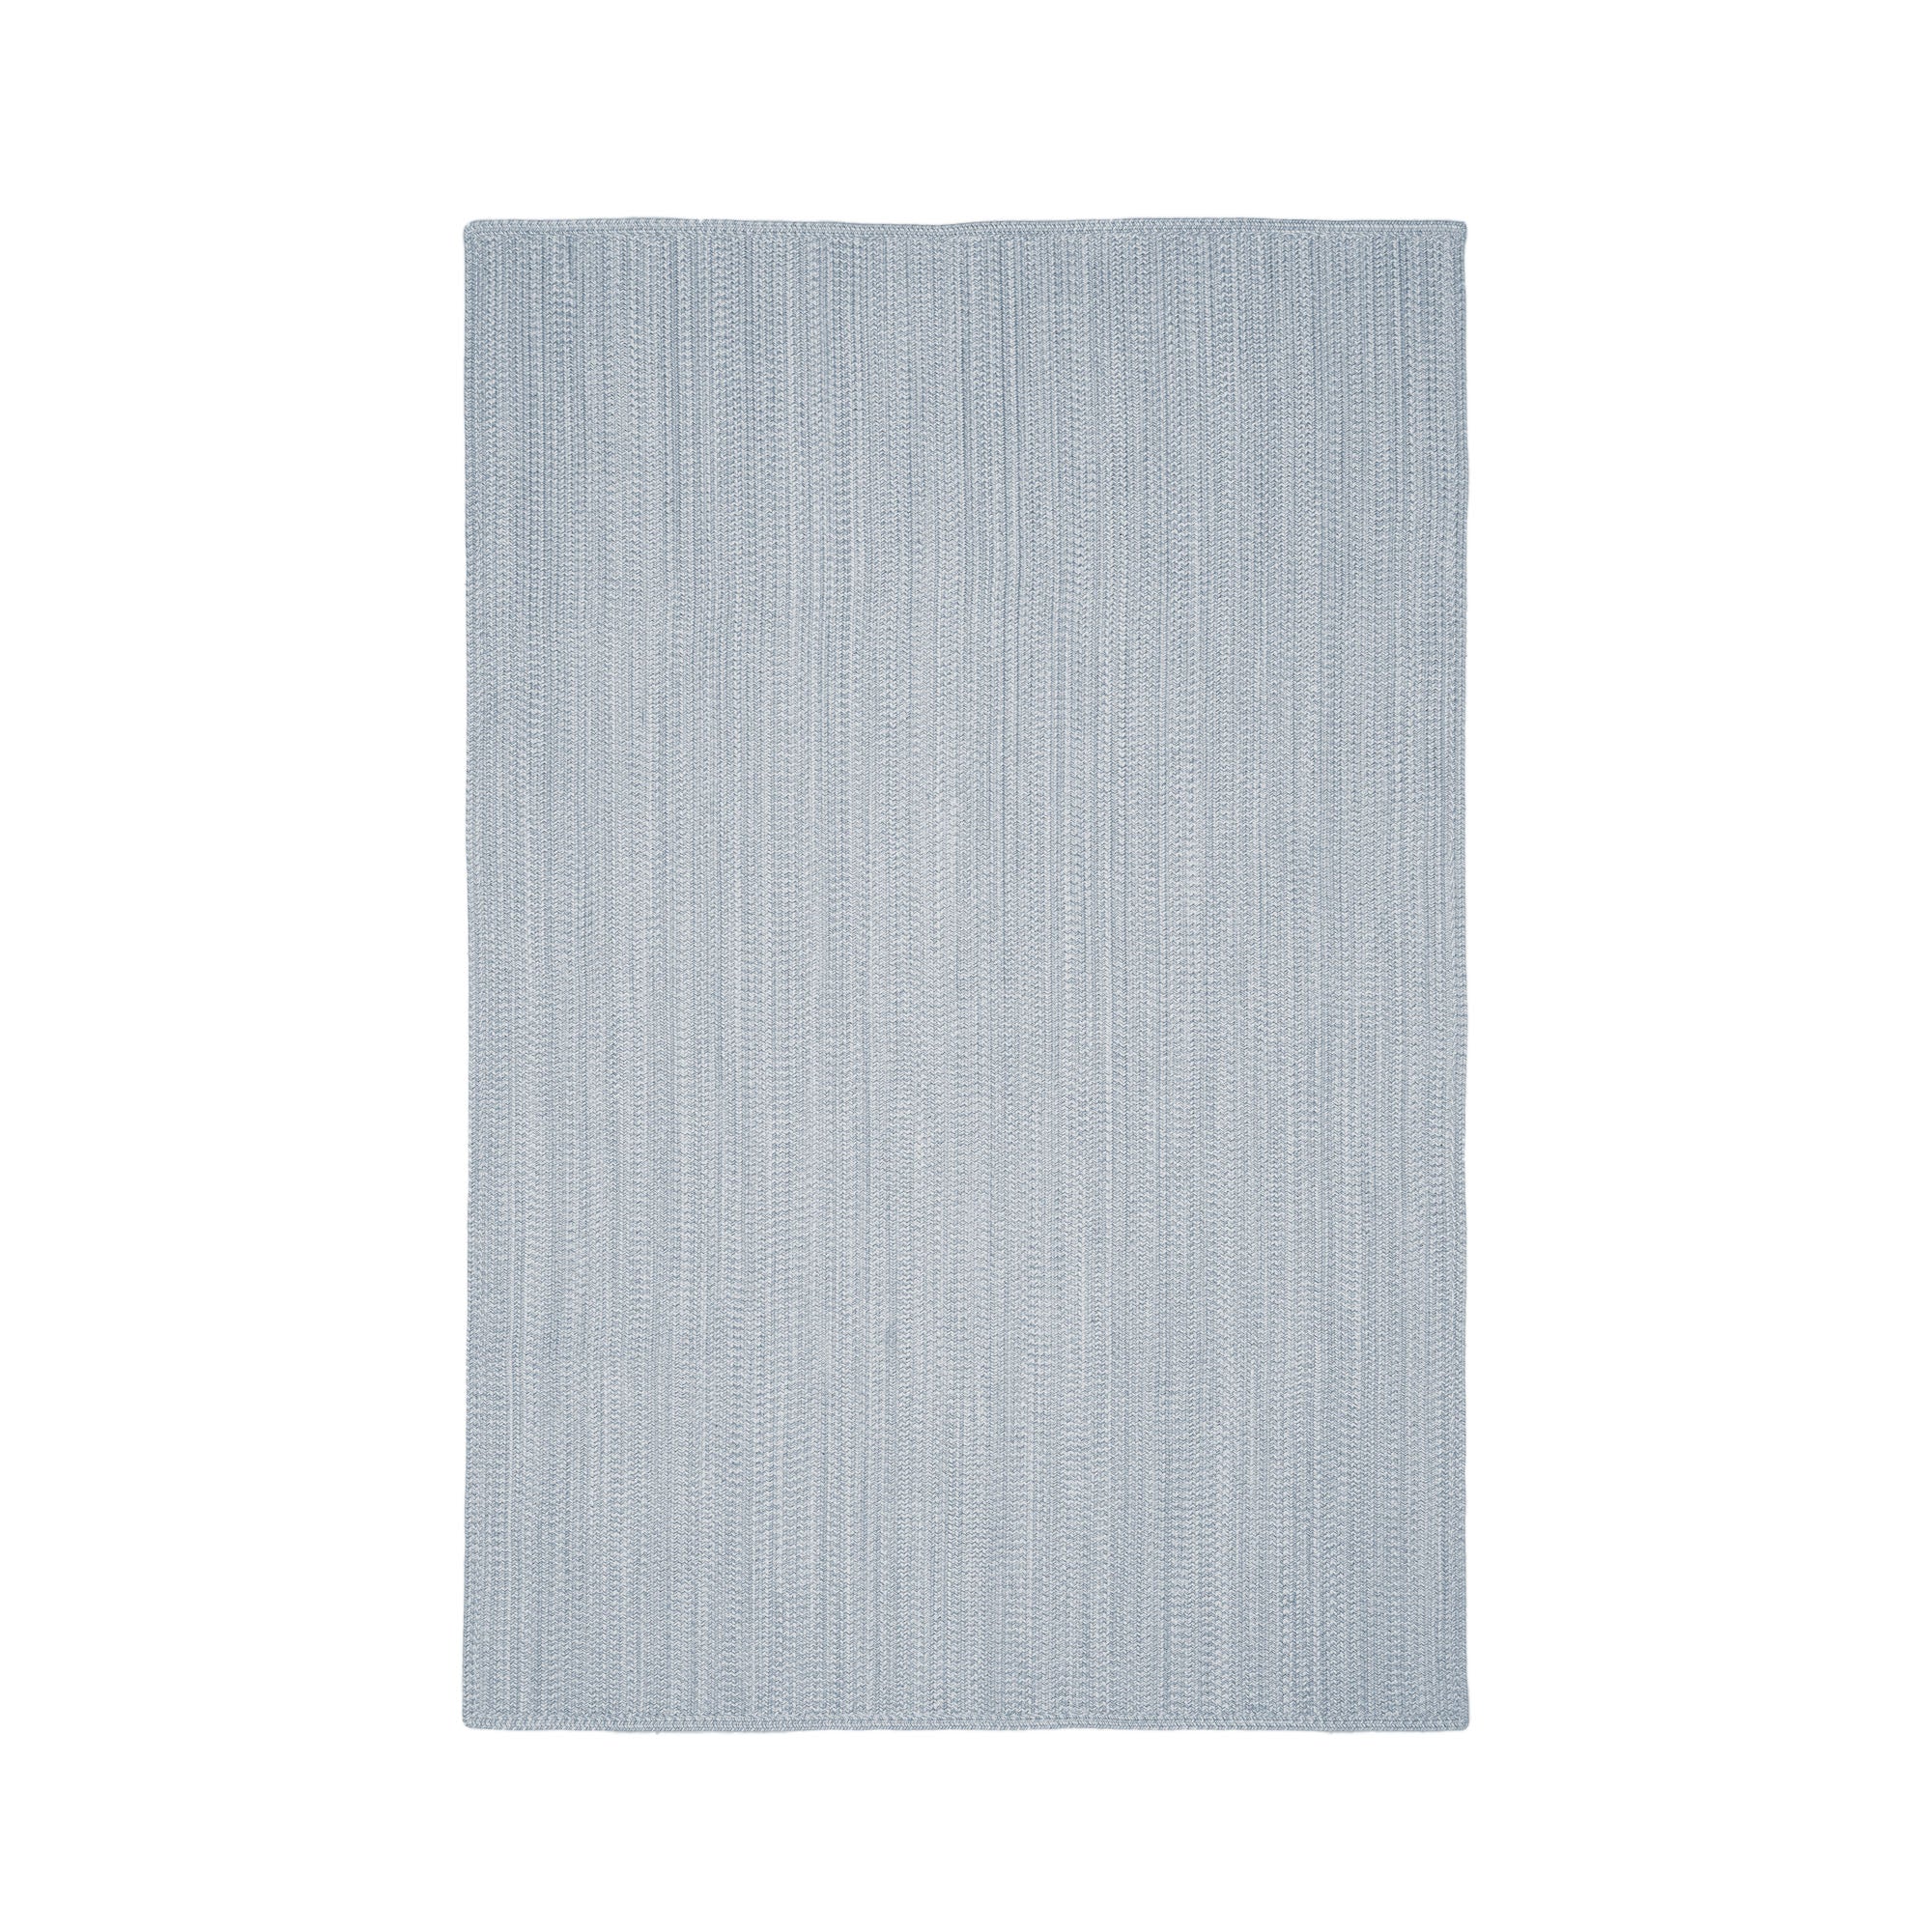 Portopi 100% PET szőnyeg szürke színben, 200 x 300 cm